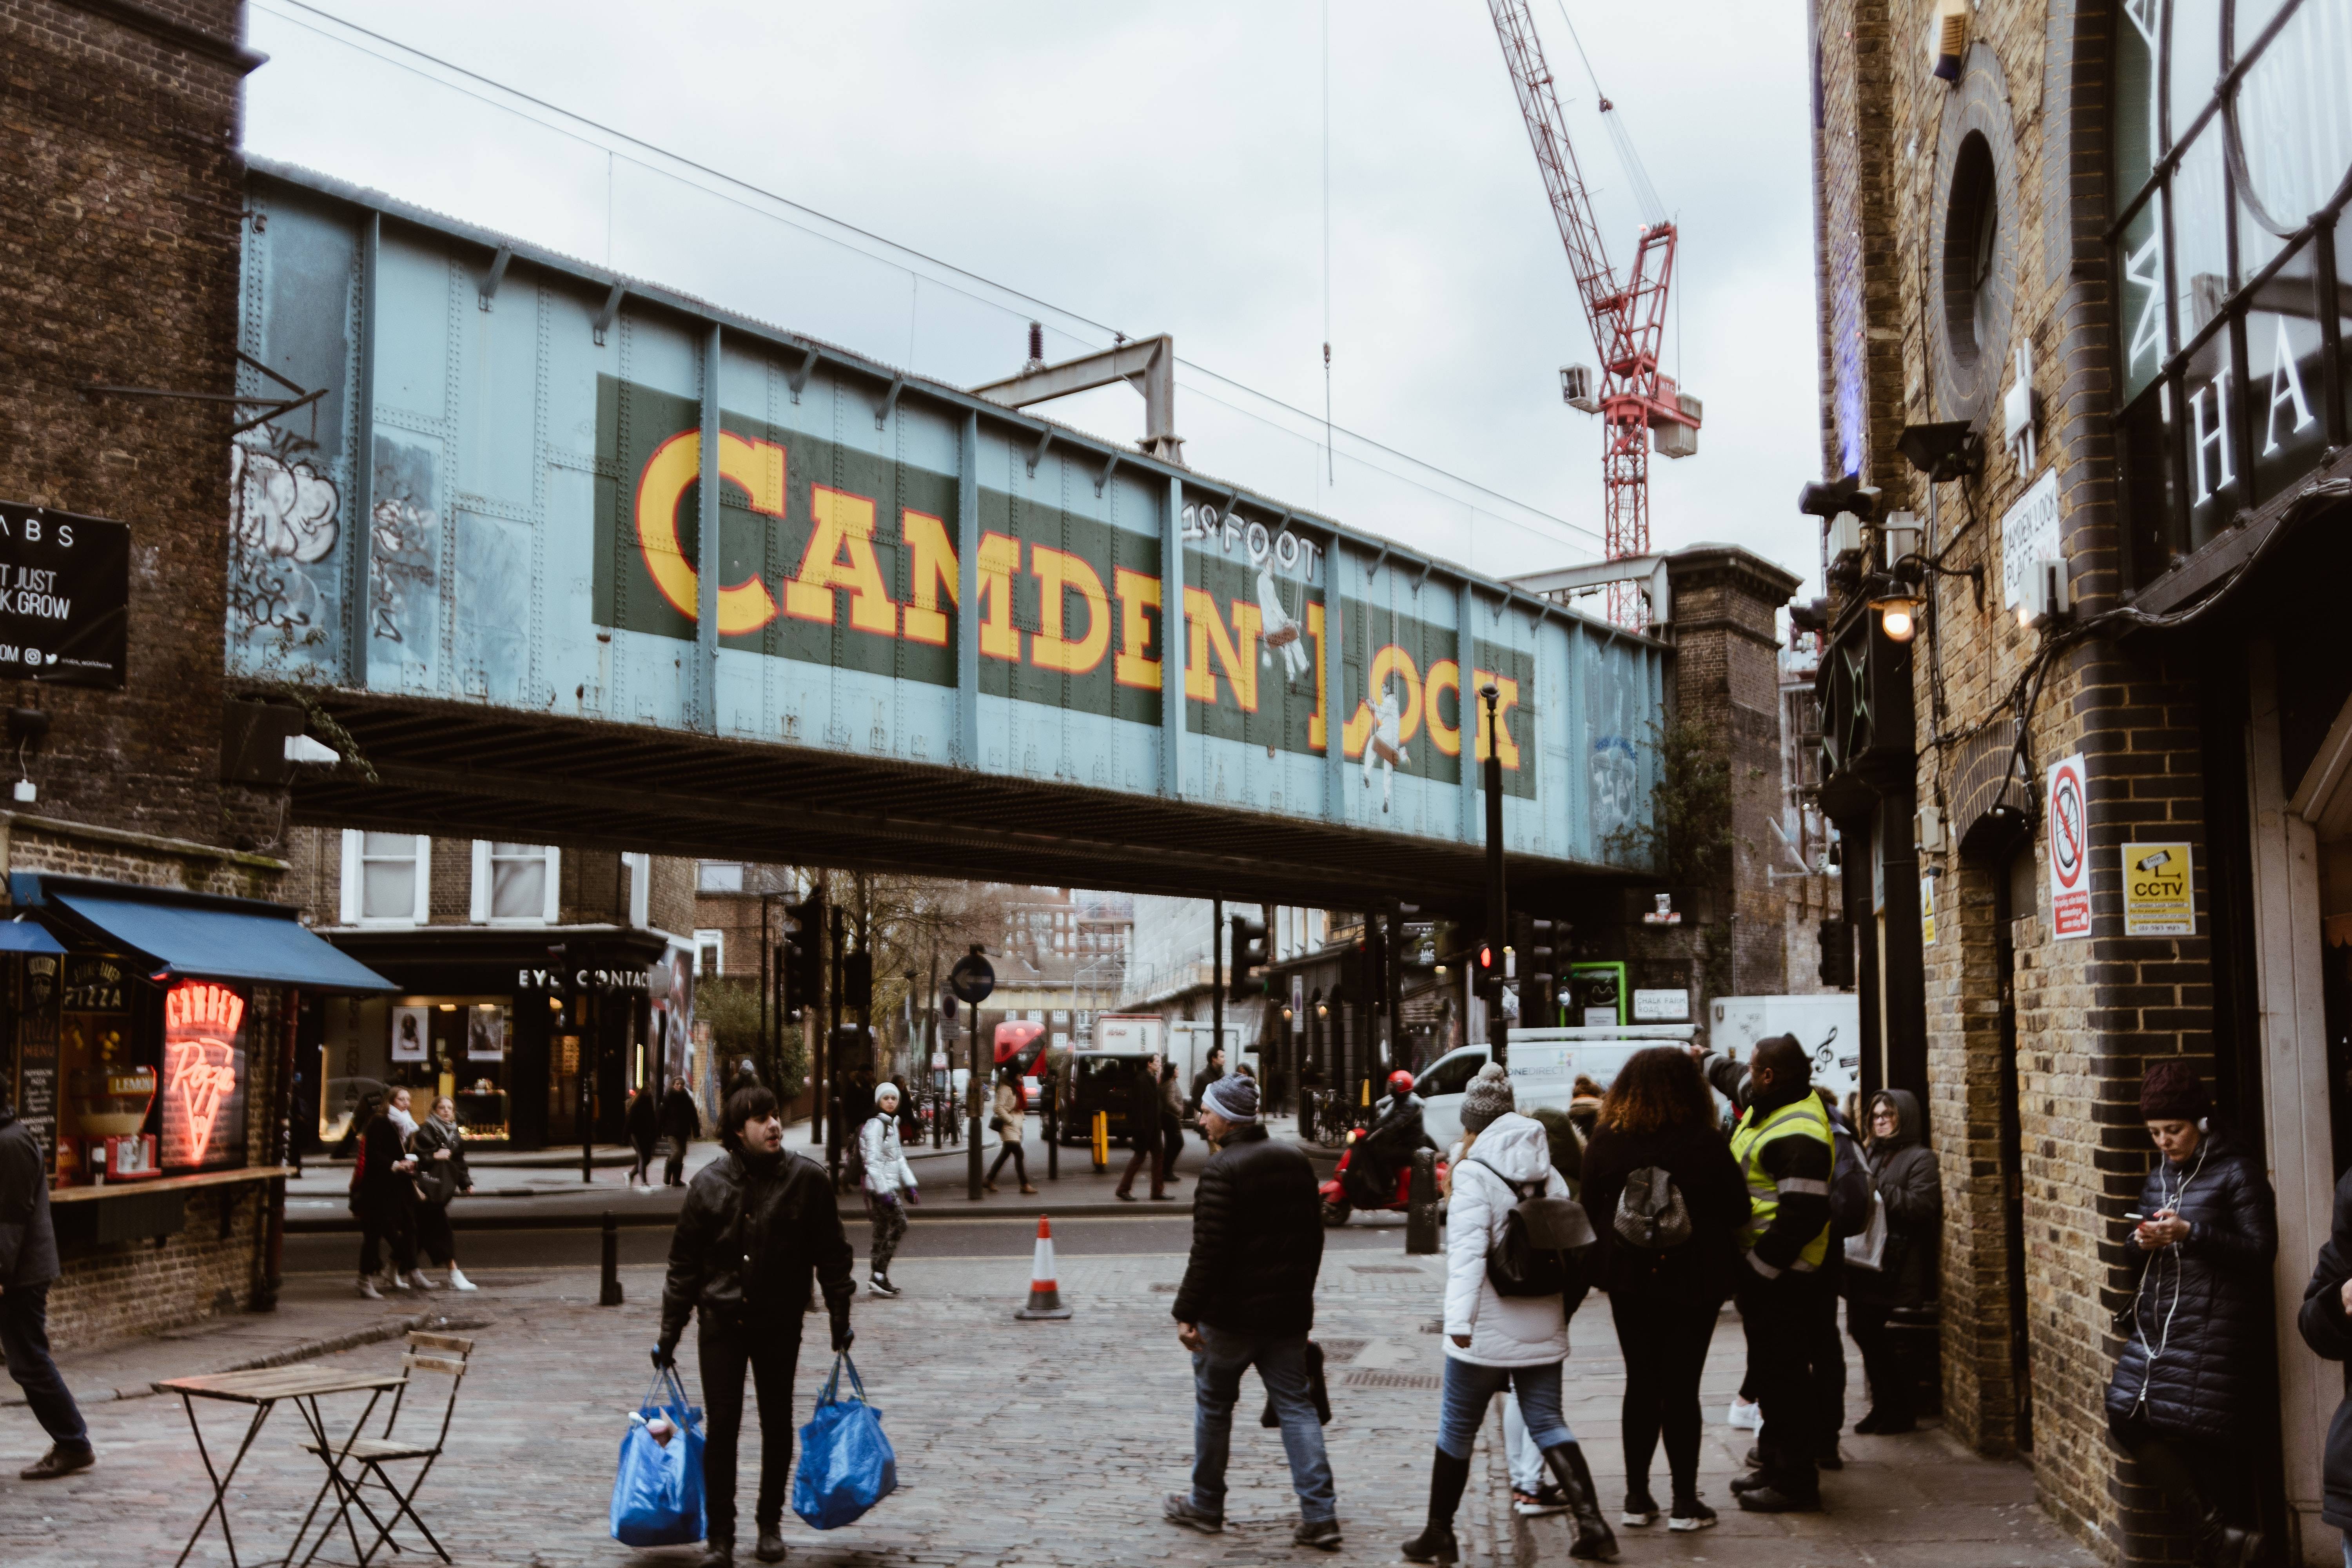 Camden lock